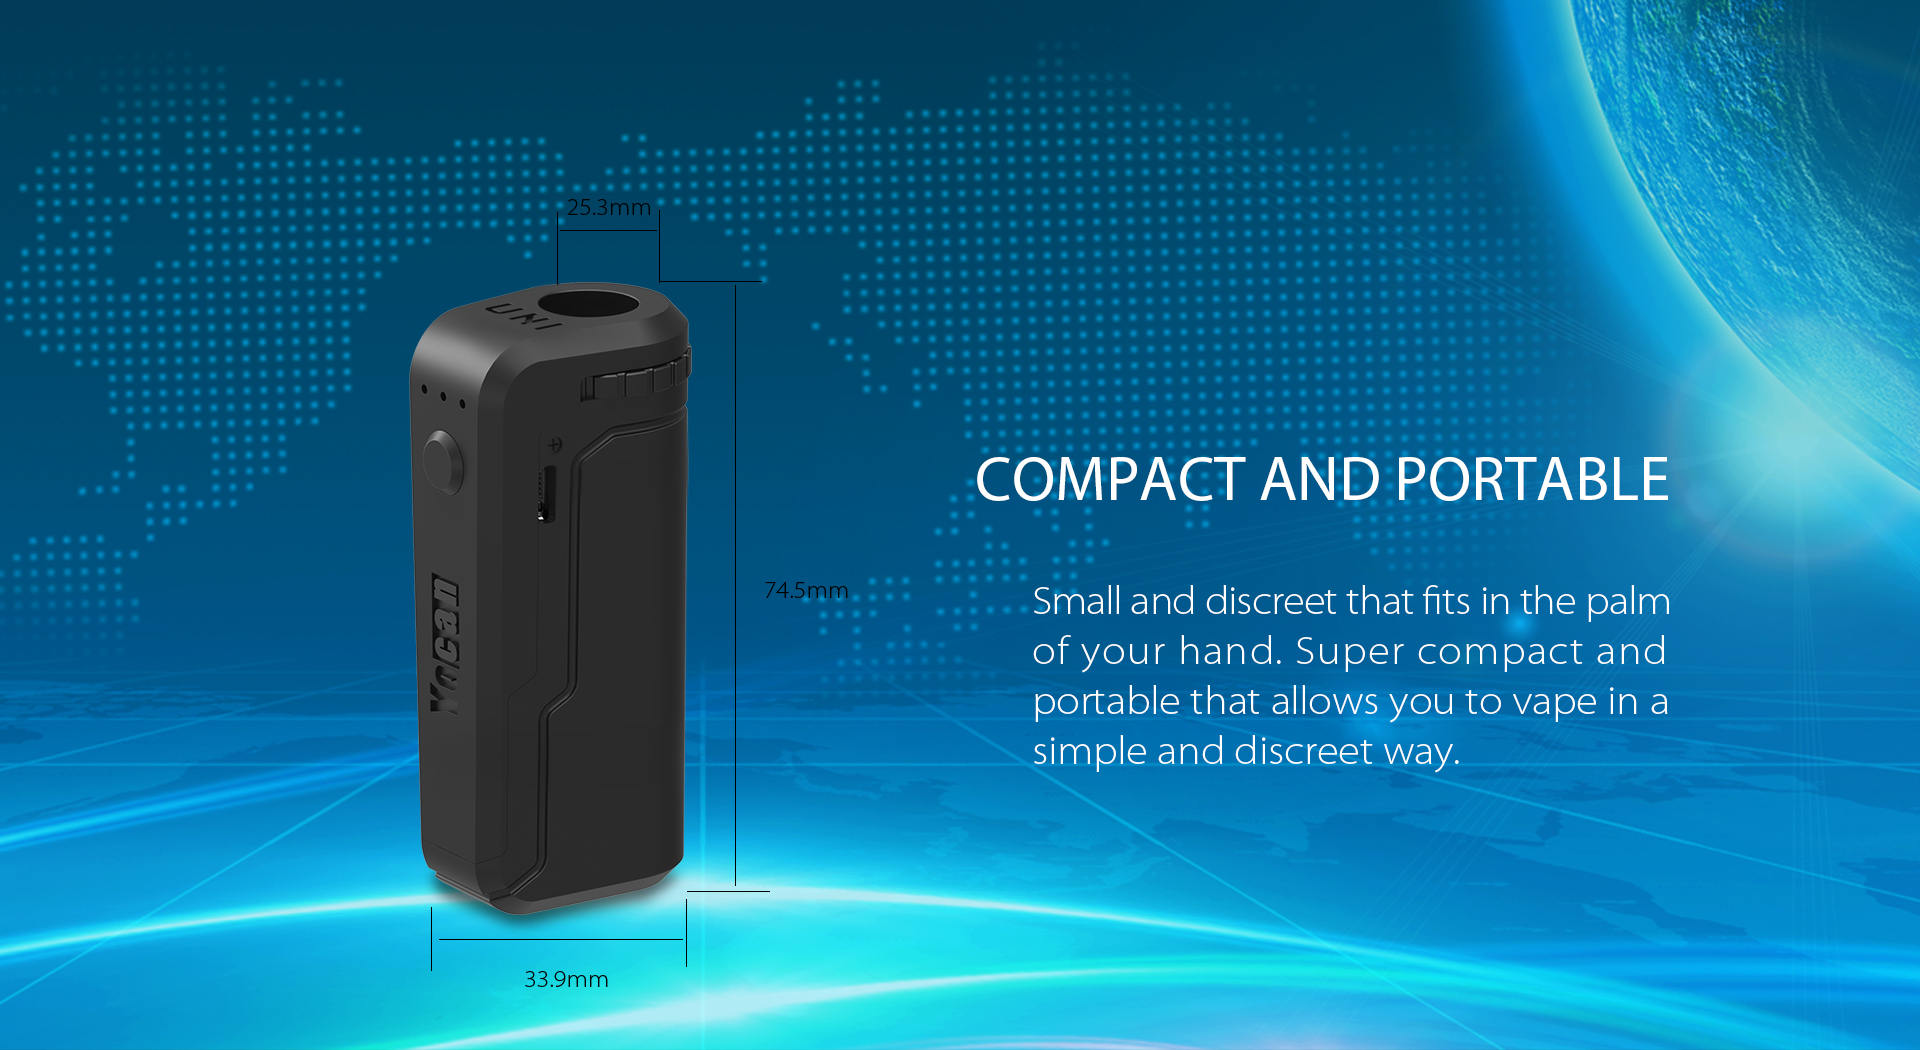 Yocan UNI compact and portable